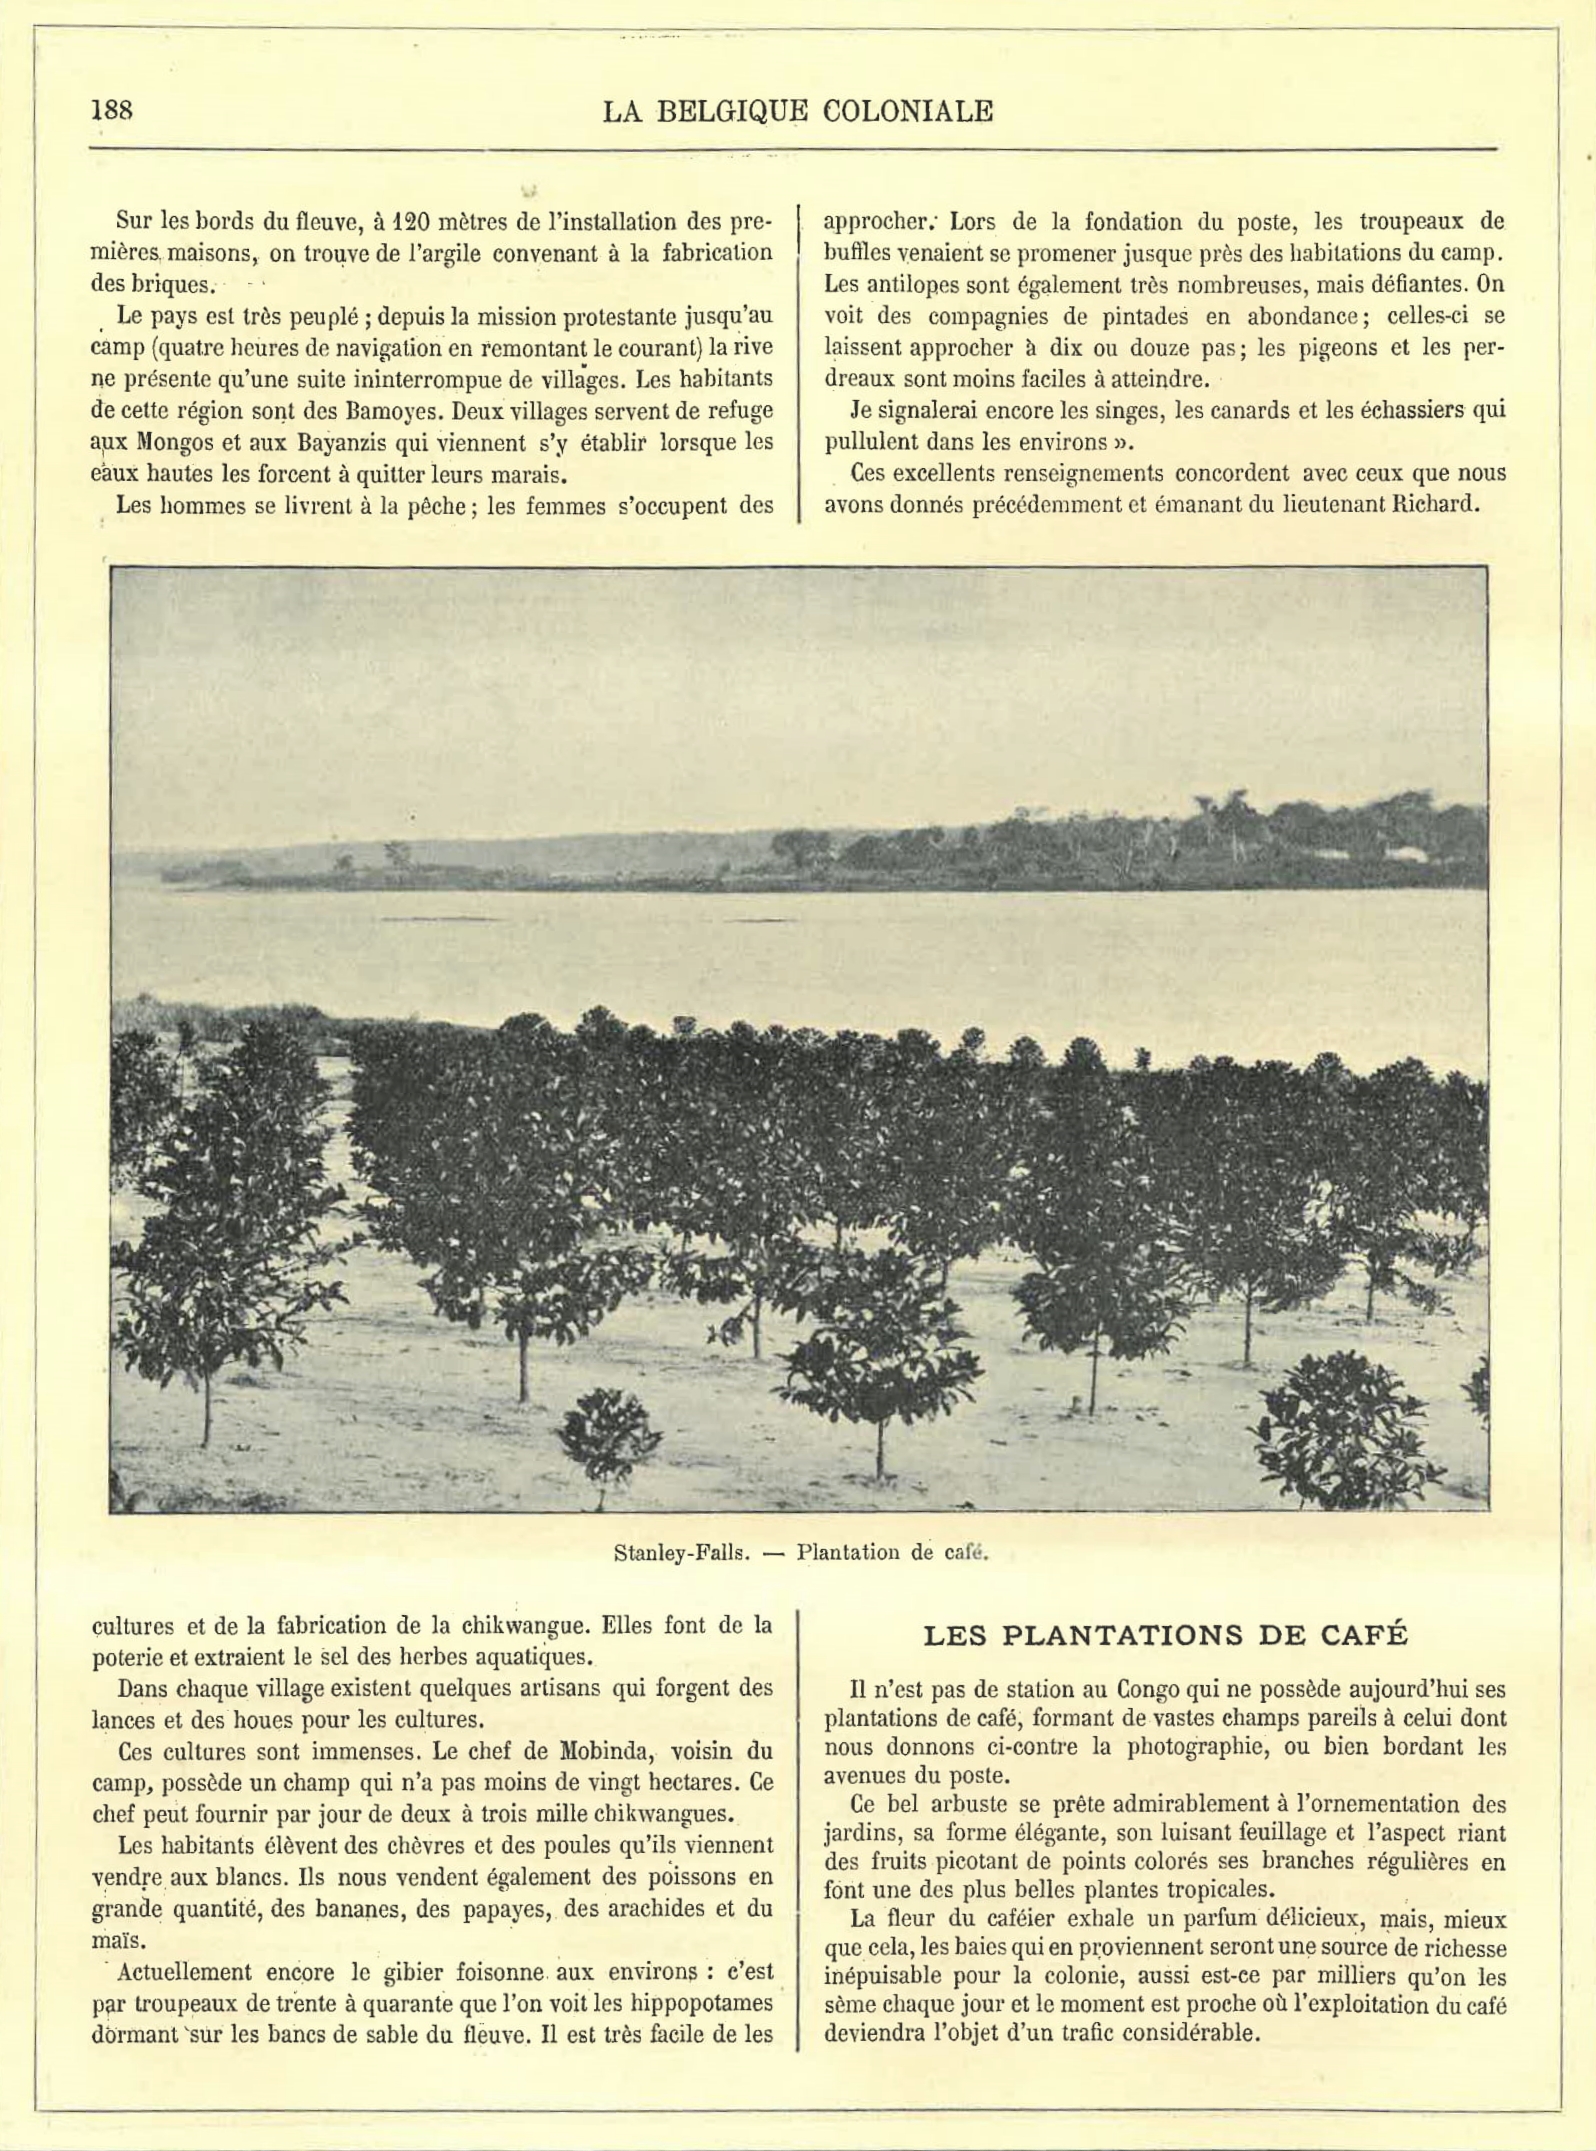 Beeld van een koffieplantage in het tijdschrift La Belgique Coloniale. Collectie Plantentuin Meise.